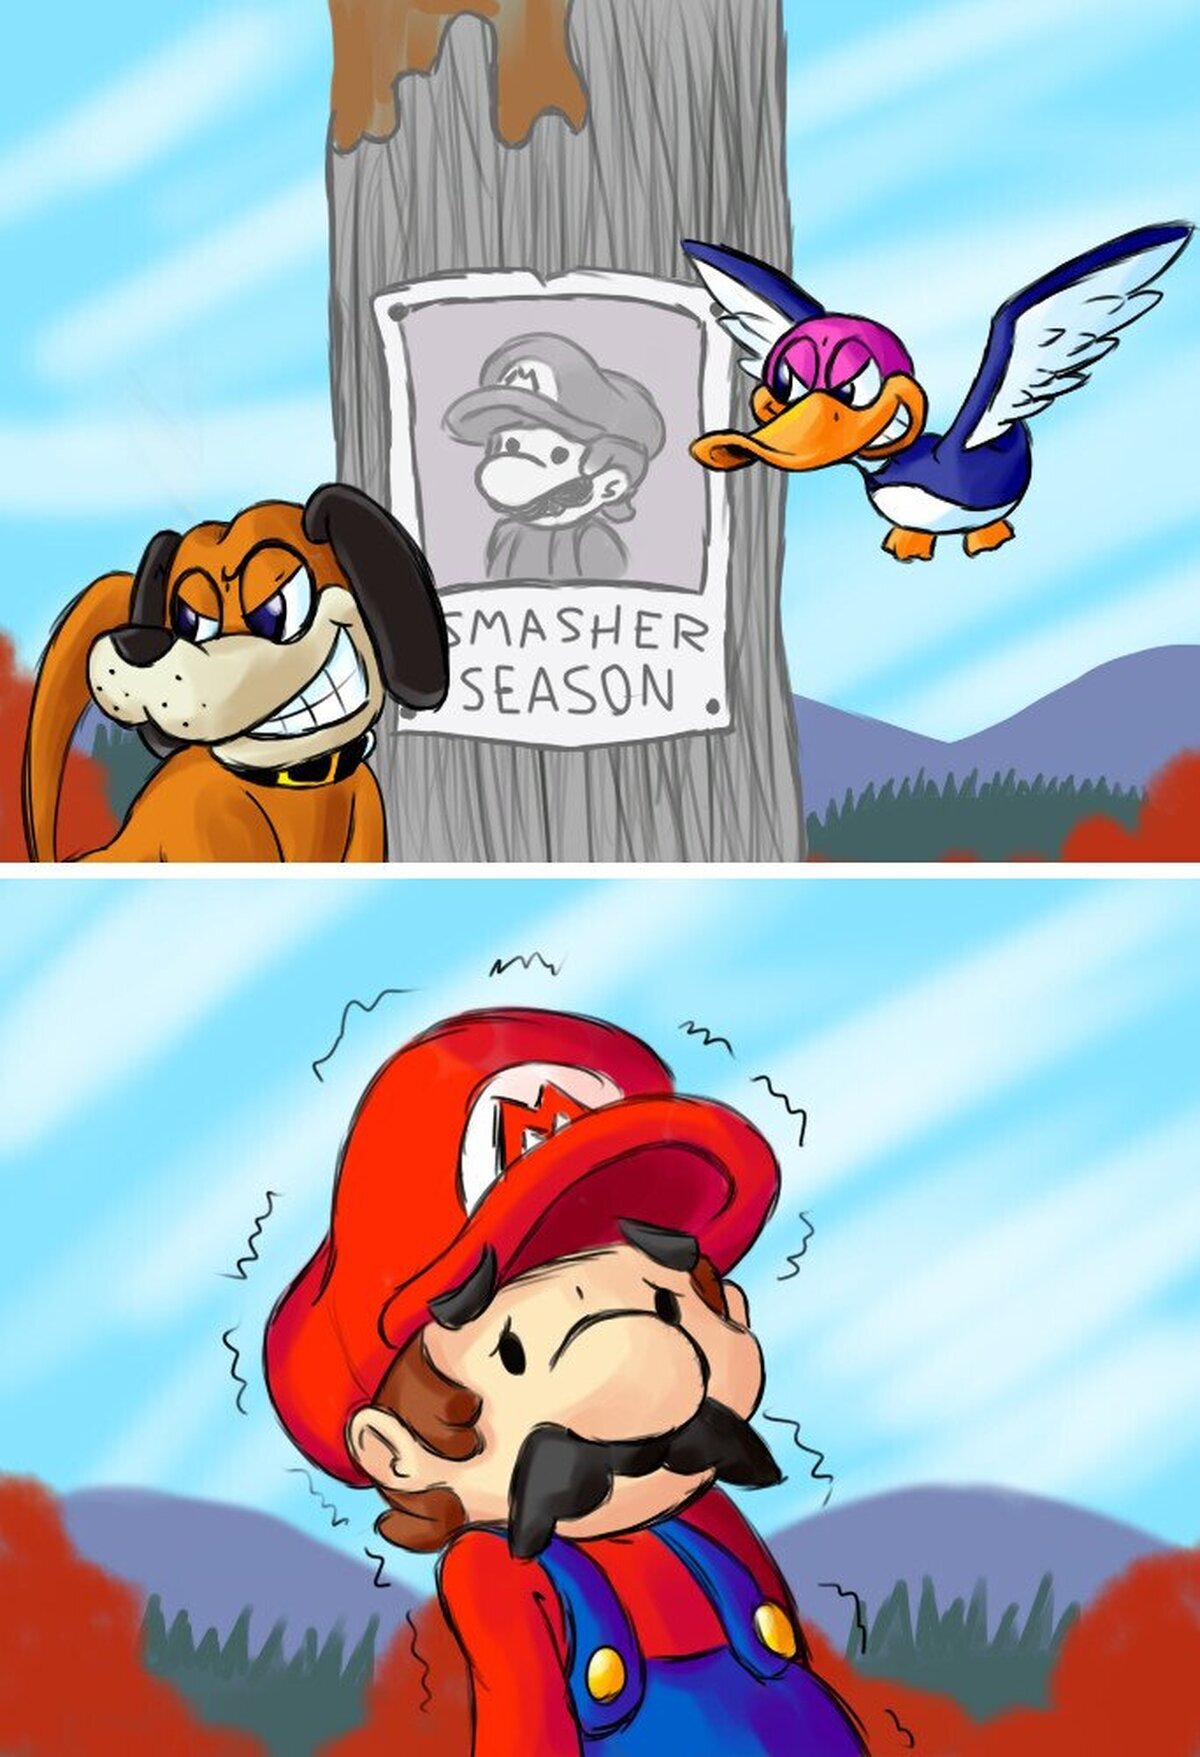 ¡Temporada de Marios!